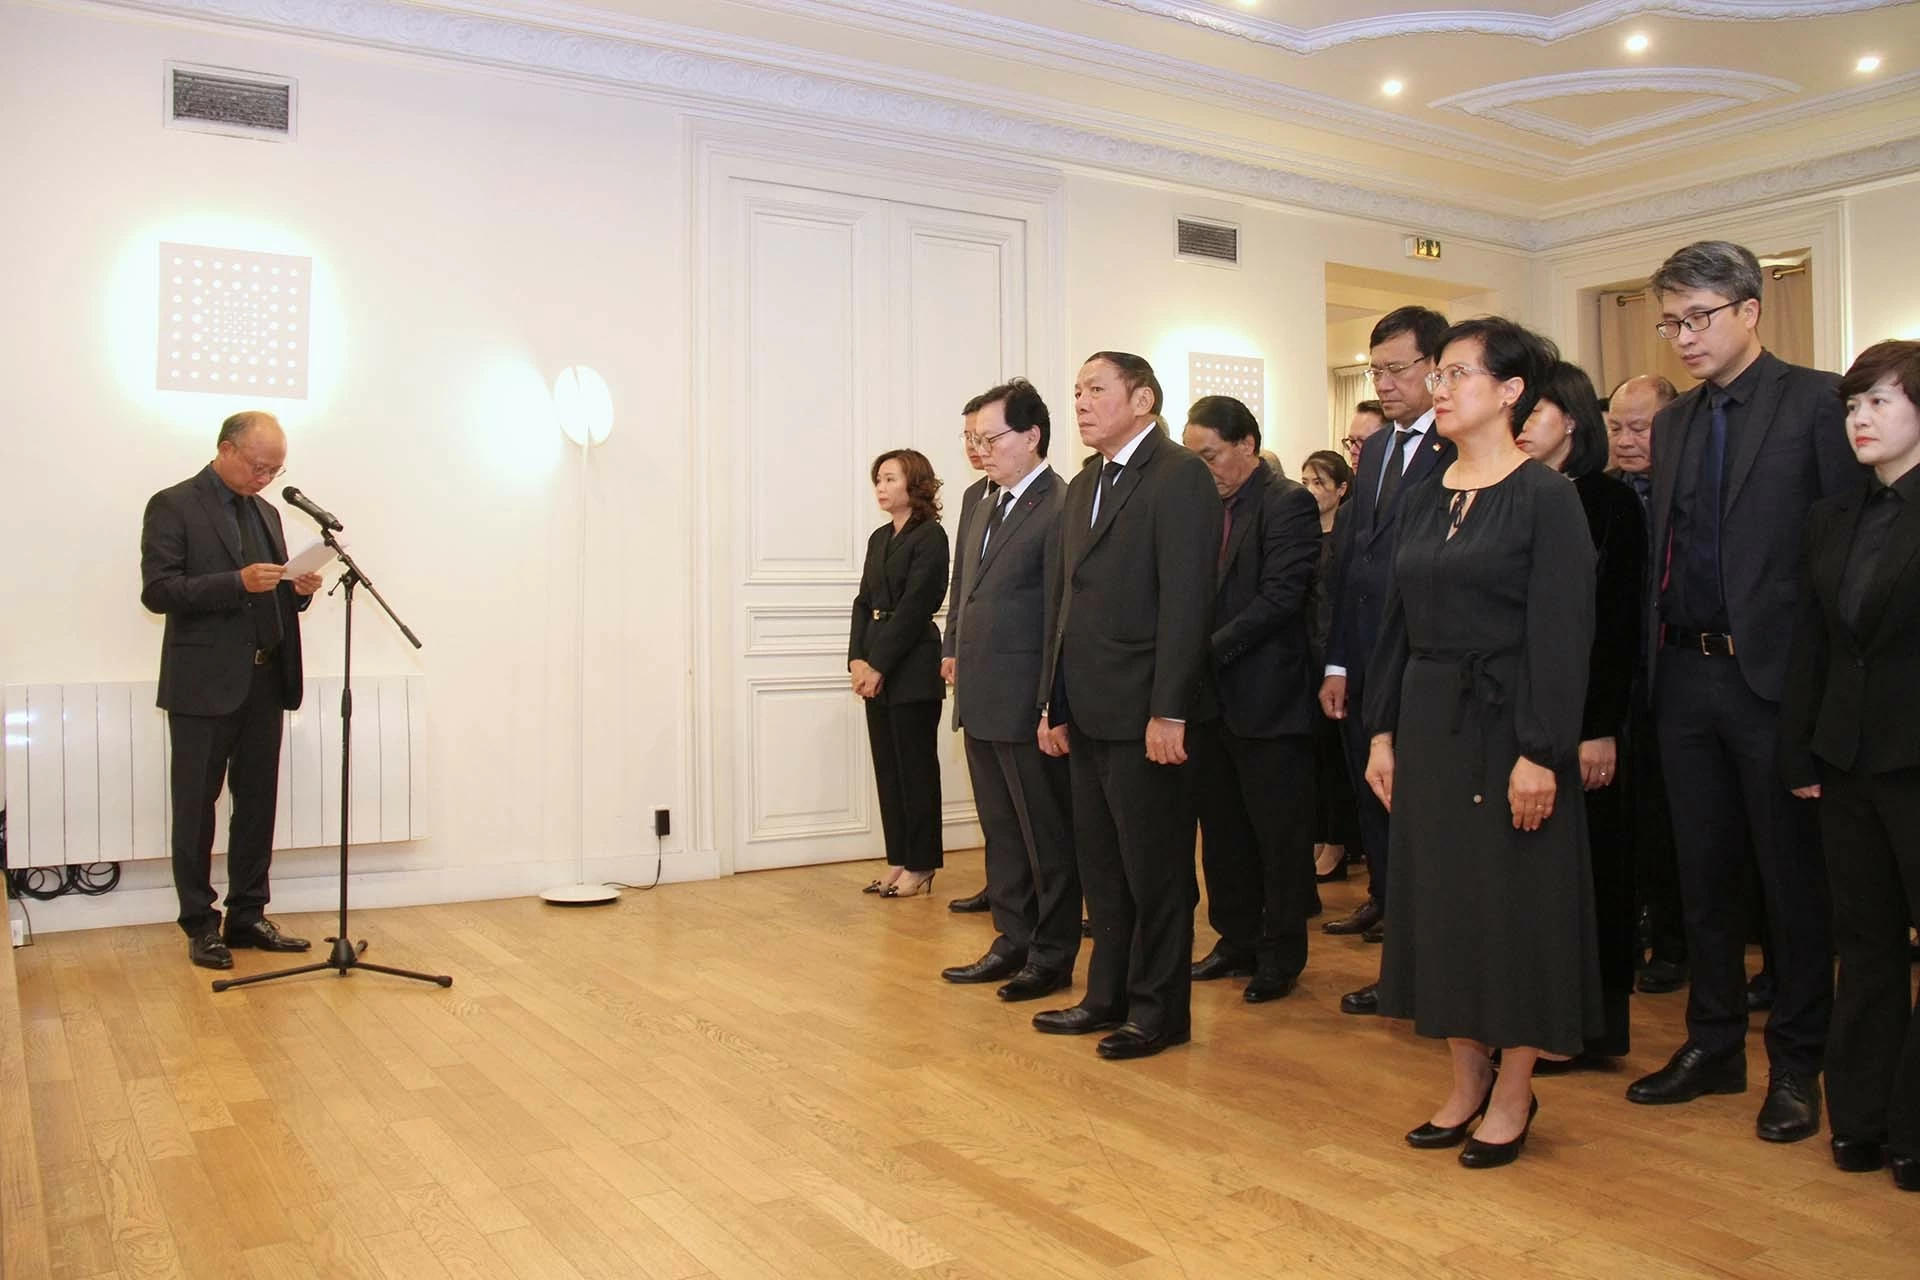 Bạn bè quốc tế và người Việt tại Pháp bày tỏ sự kính trọng và niềm tiếc thương sâu sắc đối với Tổng Bí thư Nguyễn Phú Trọng